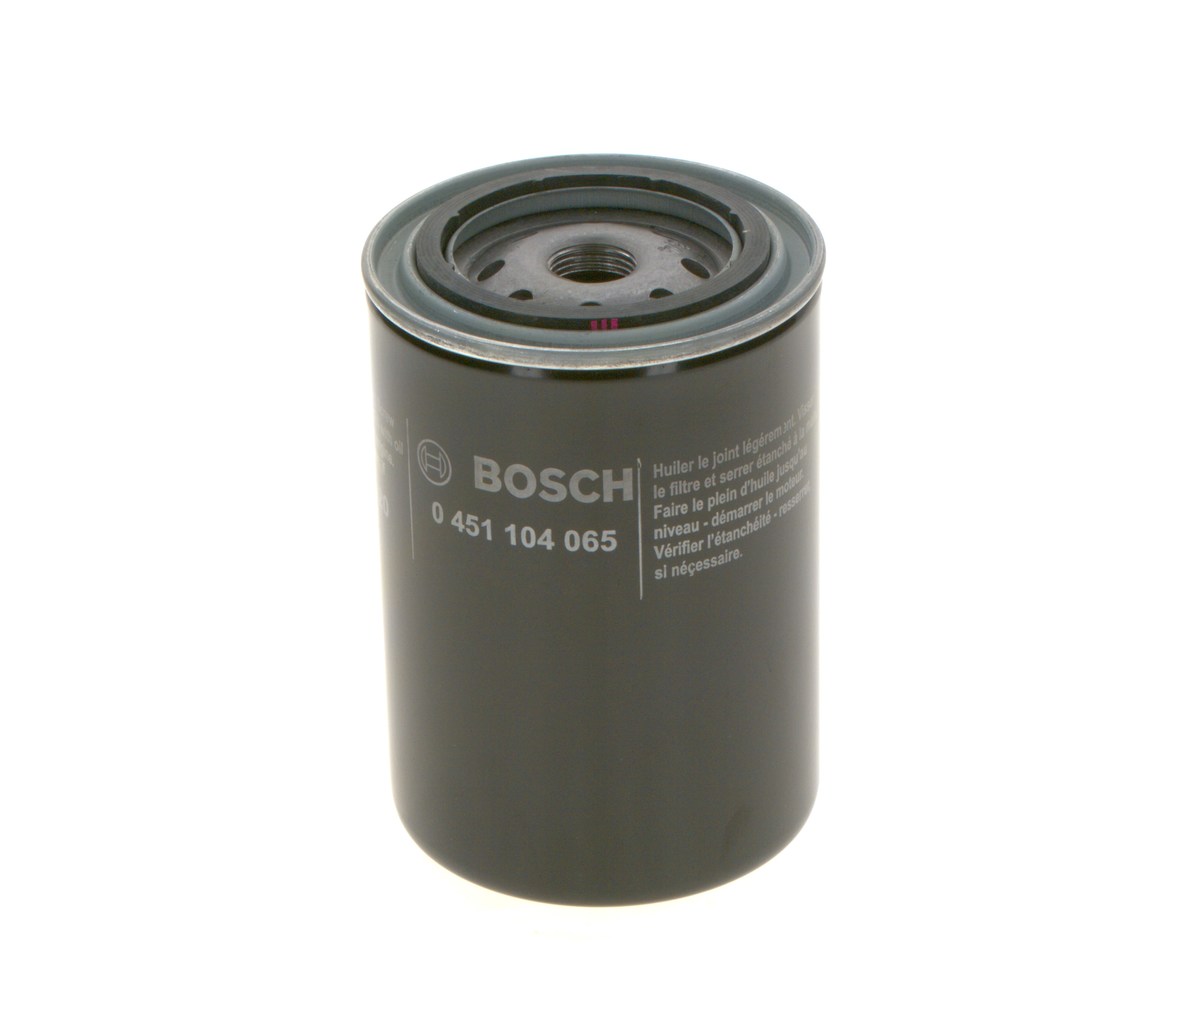 BOSCH 0 451 104 065 Oil filter 3/4